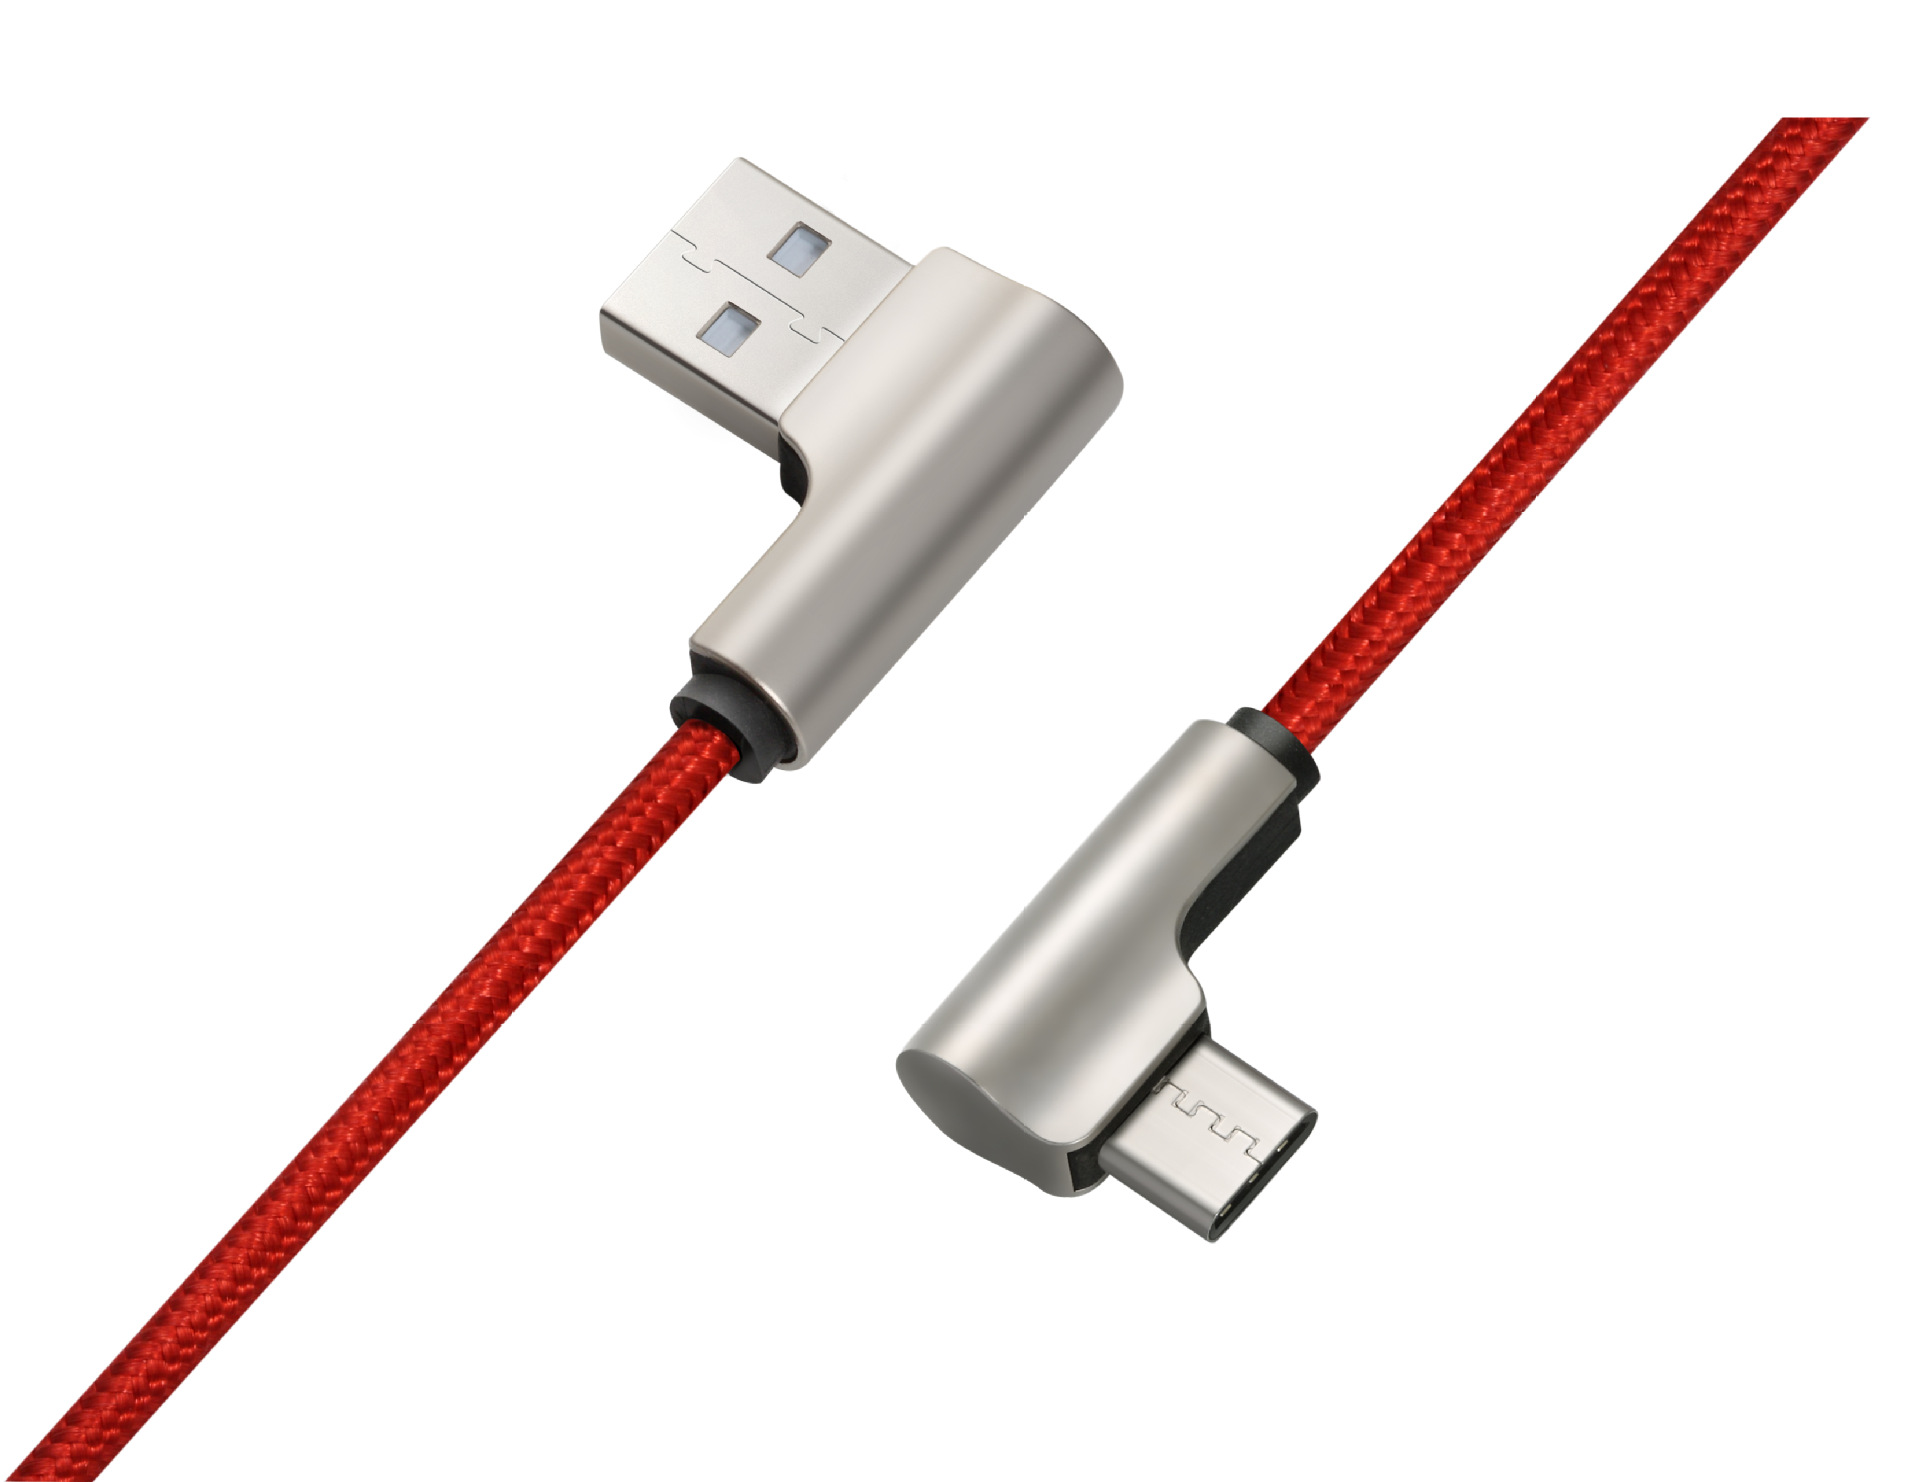 Câble adaptateur pour smartphone - Ref 3382753 Image 1